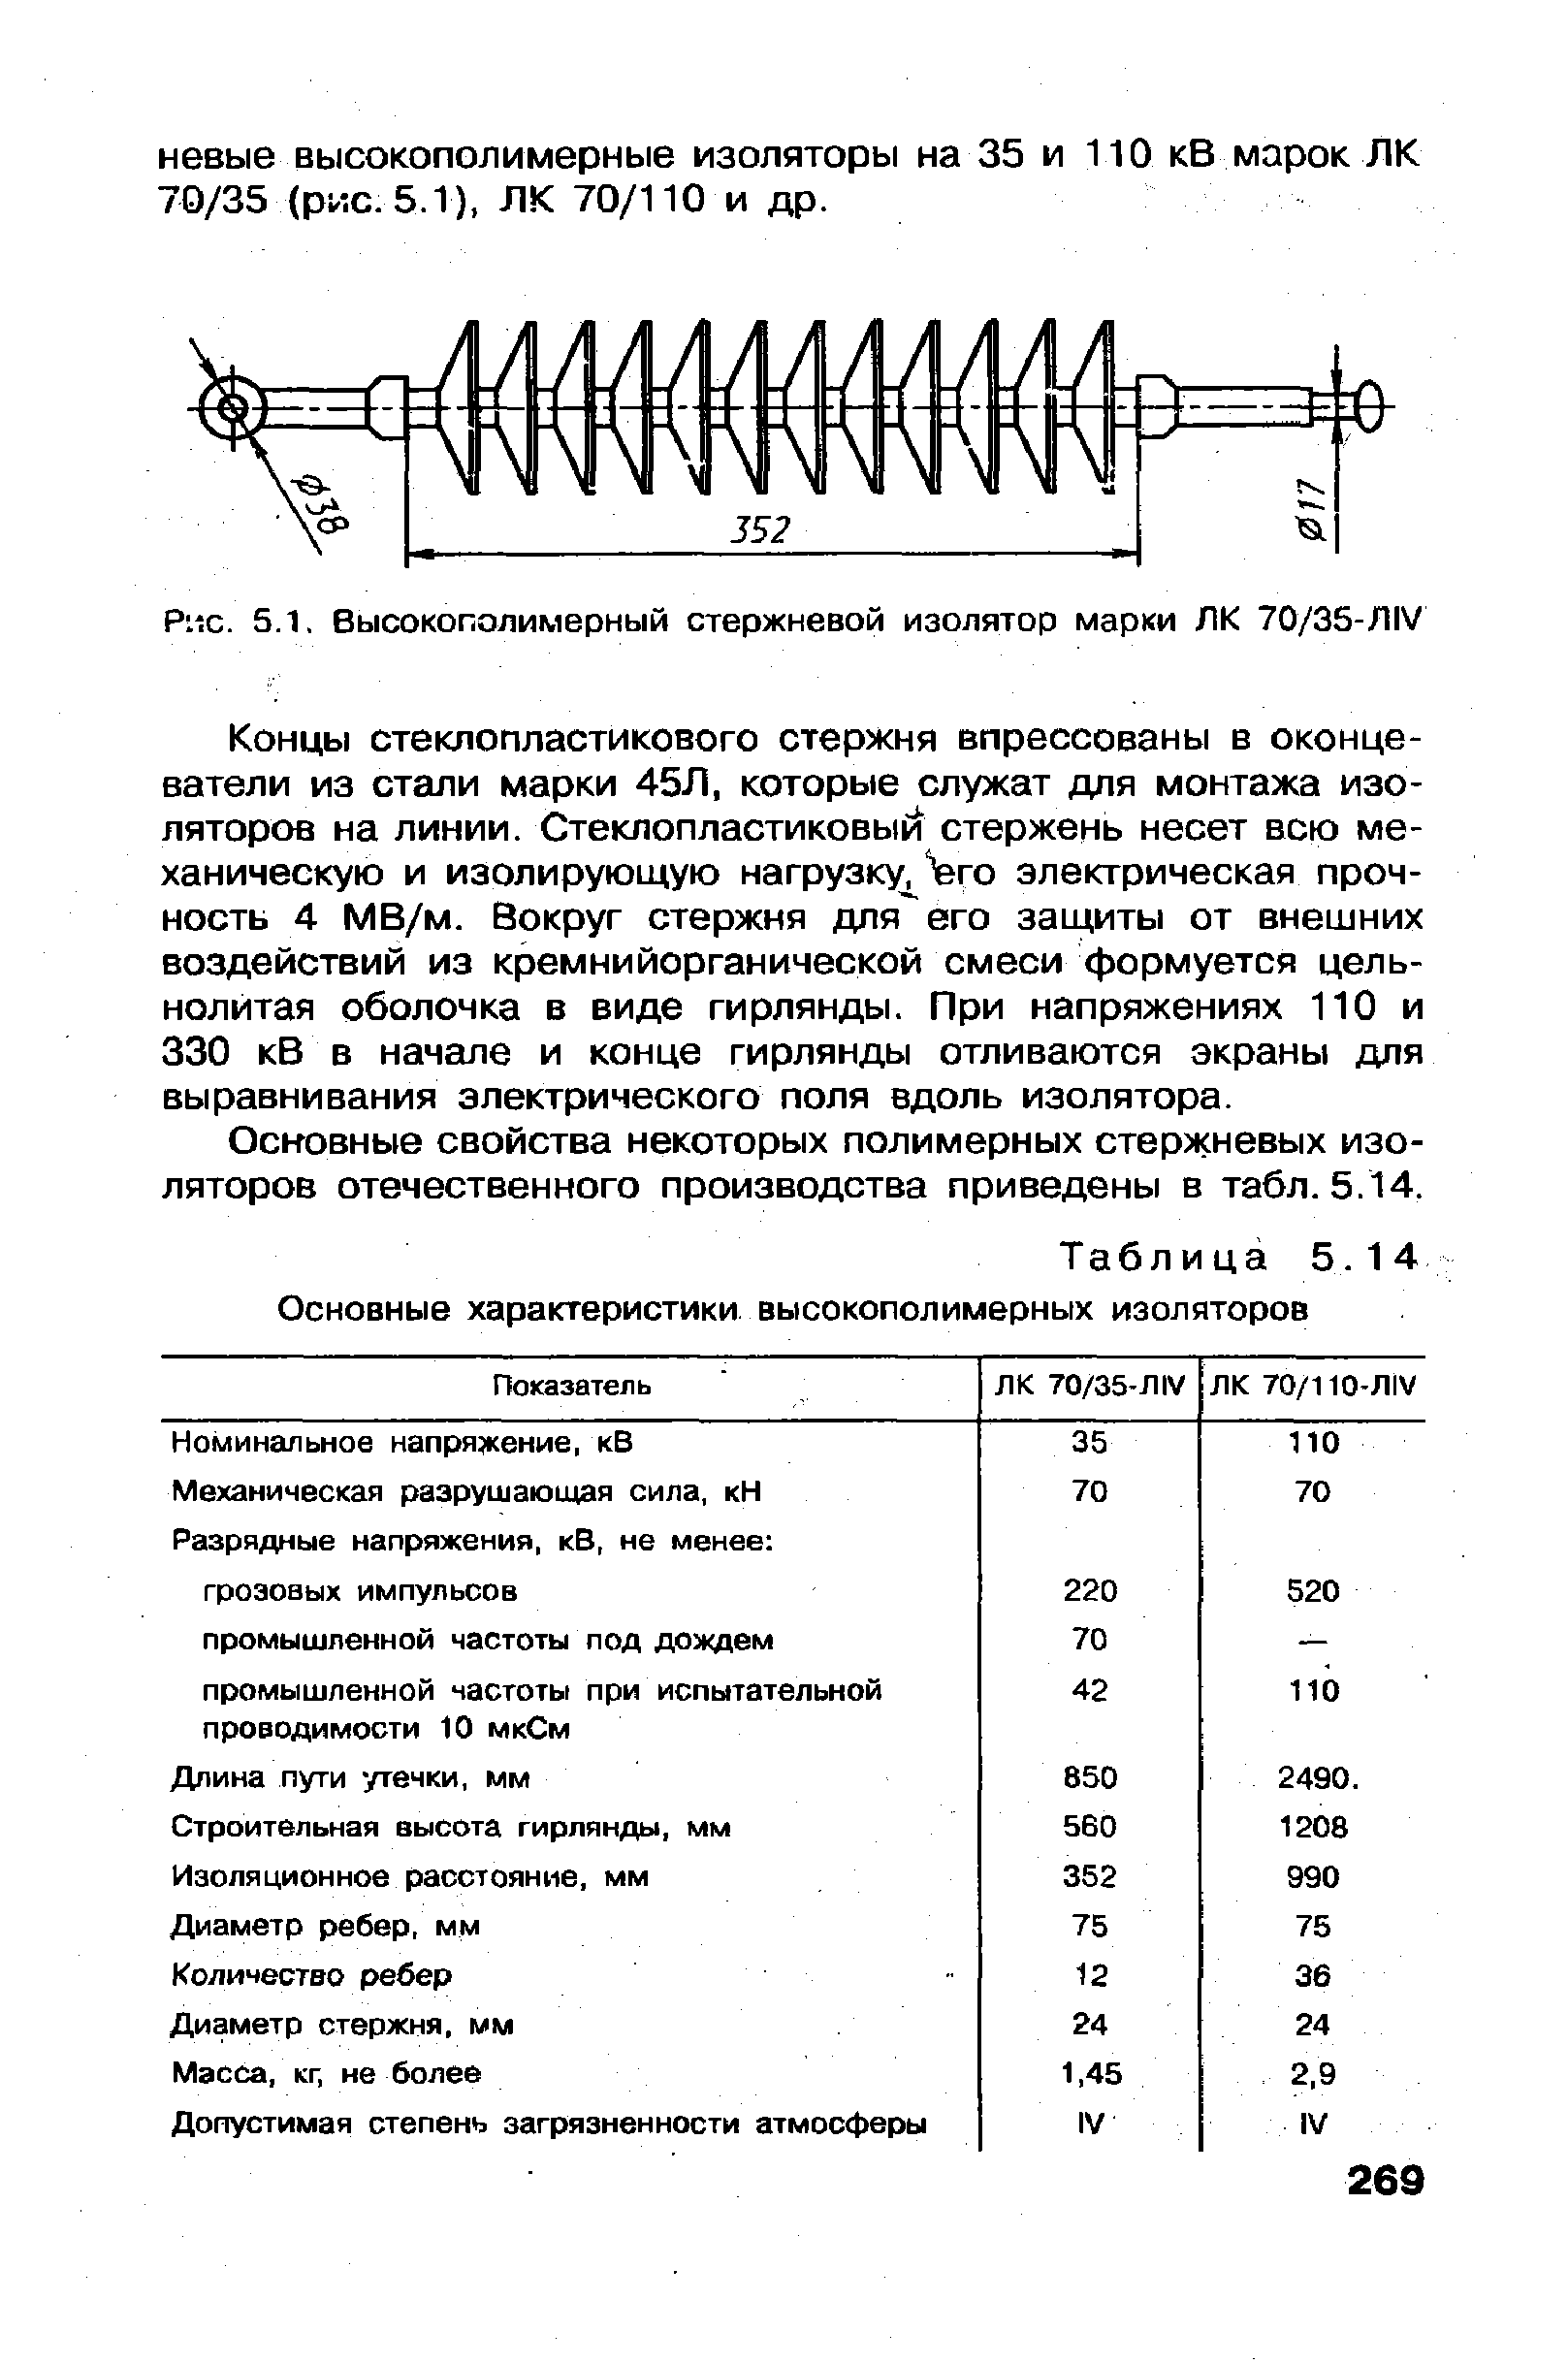 Рис. 5.1, Высокополимерный стержневой изолятор марки ЛК 70/3S-/1IV
